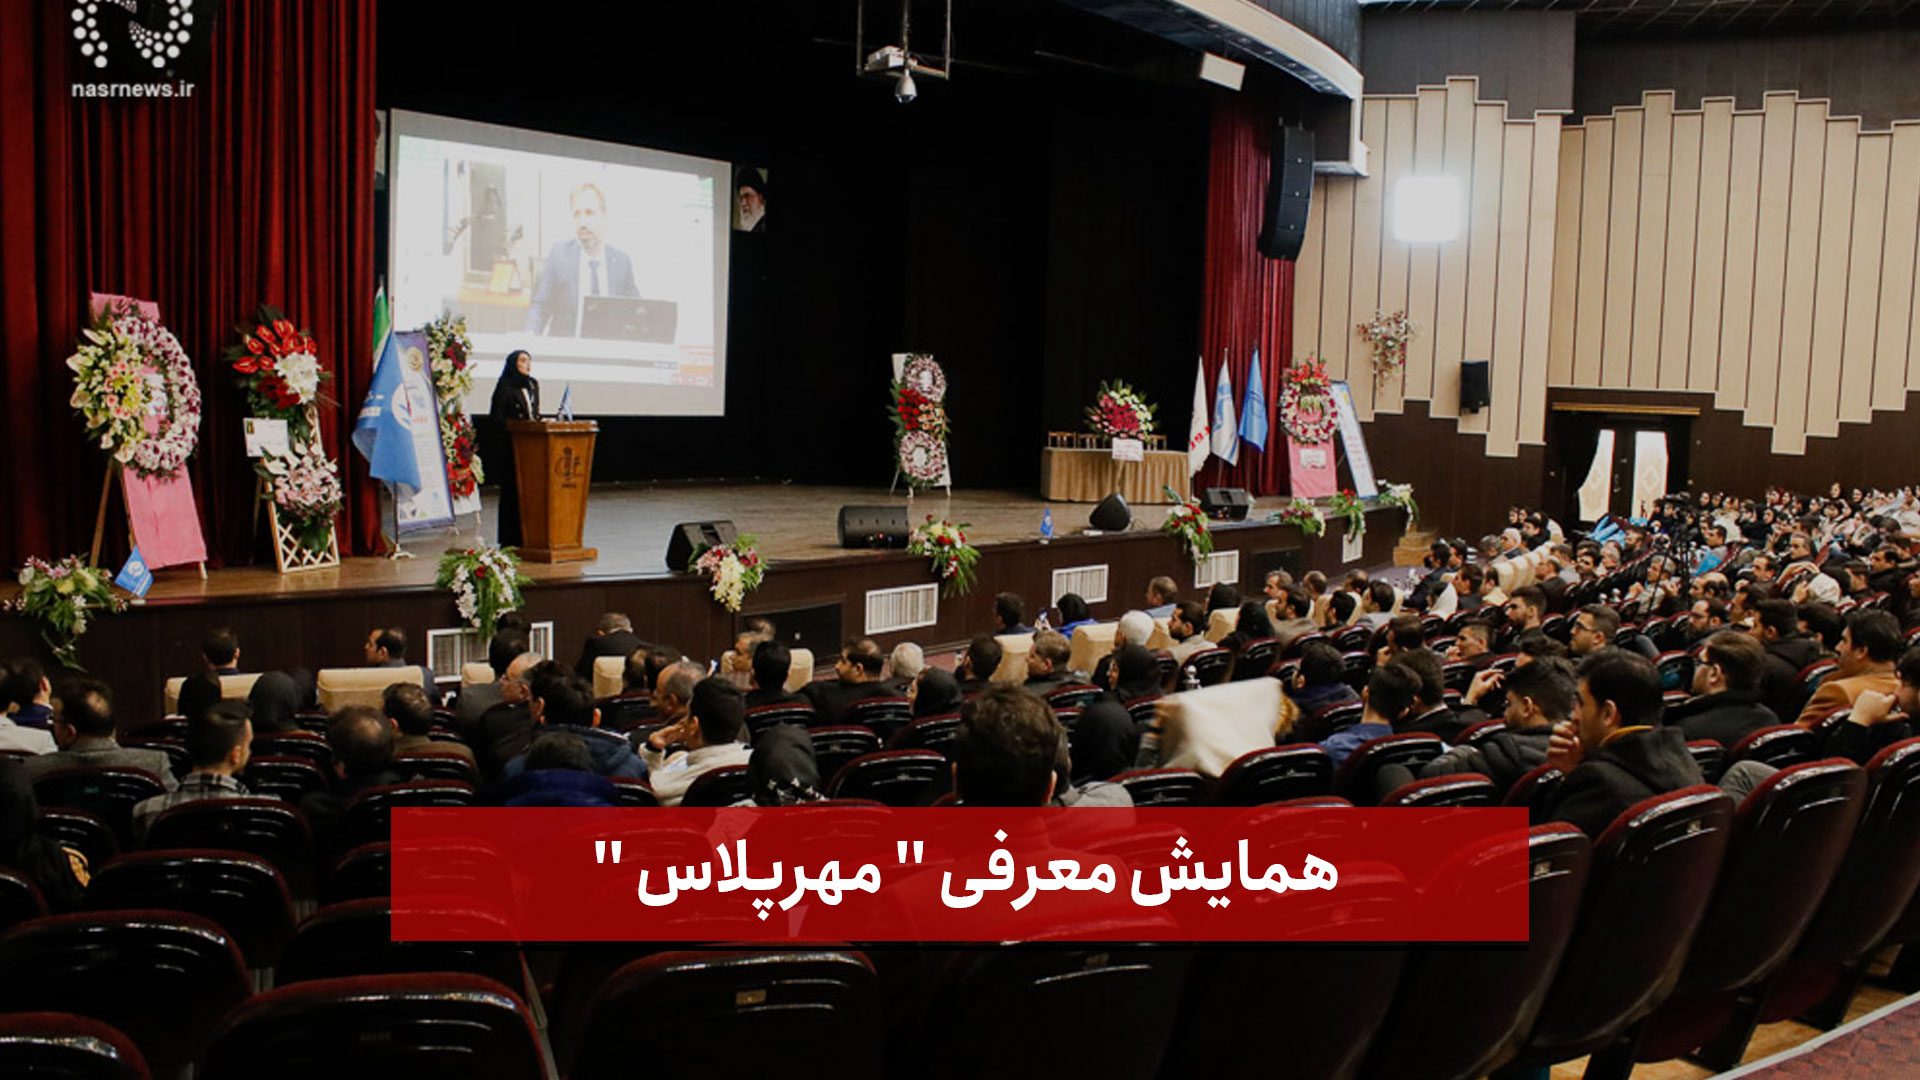 فیلم |  همایش معرفی  مهرپلاس  در تالار وحدت دانشگاه تبریز (2)